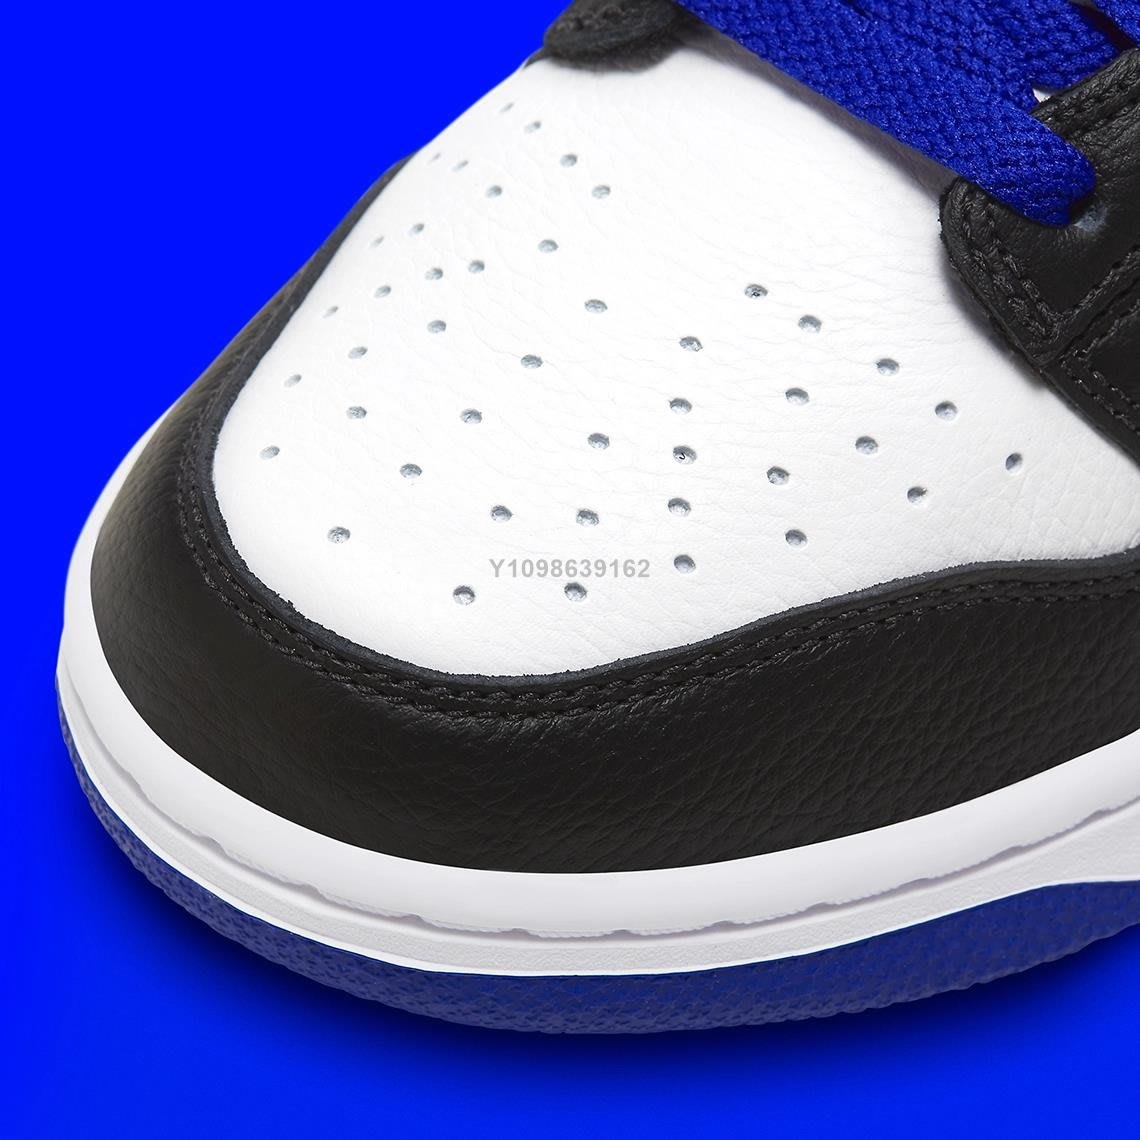 代購】Nike SB Dunk Low 小閃電反轉熊貓黑白藍低幫休閒滑板鞋FD9064